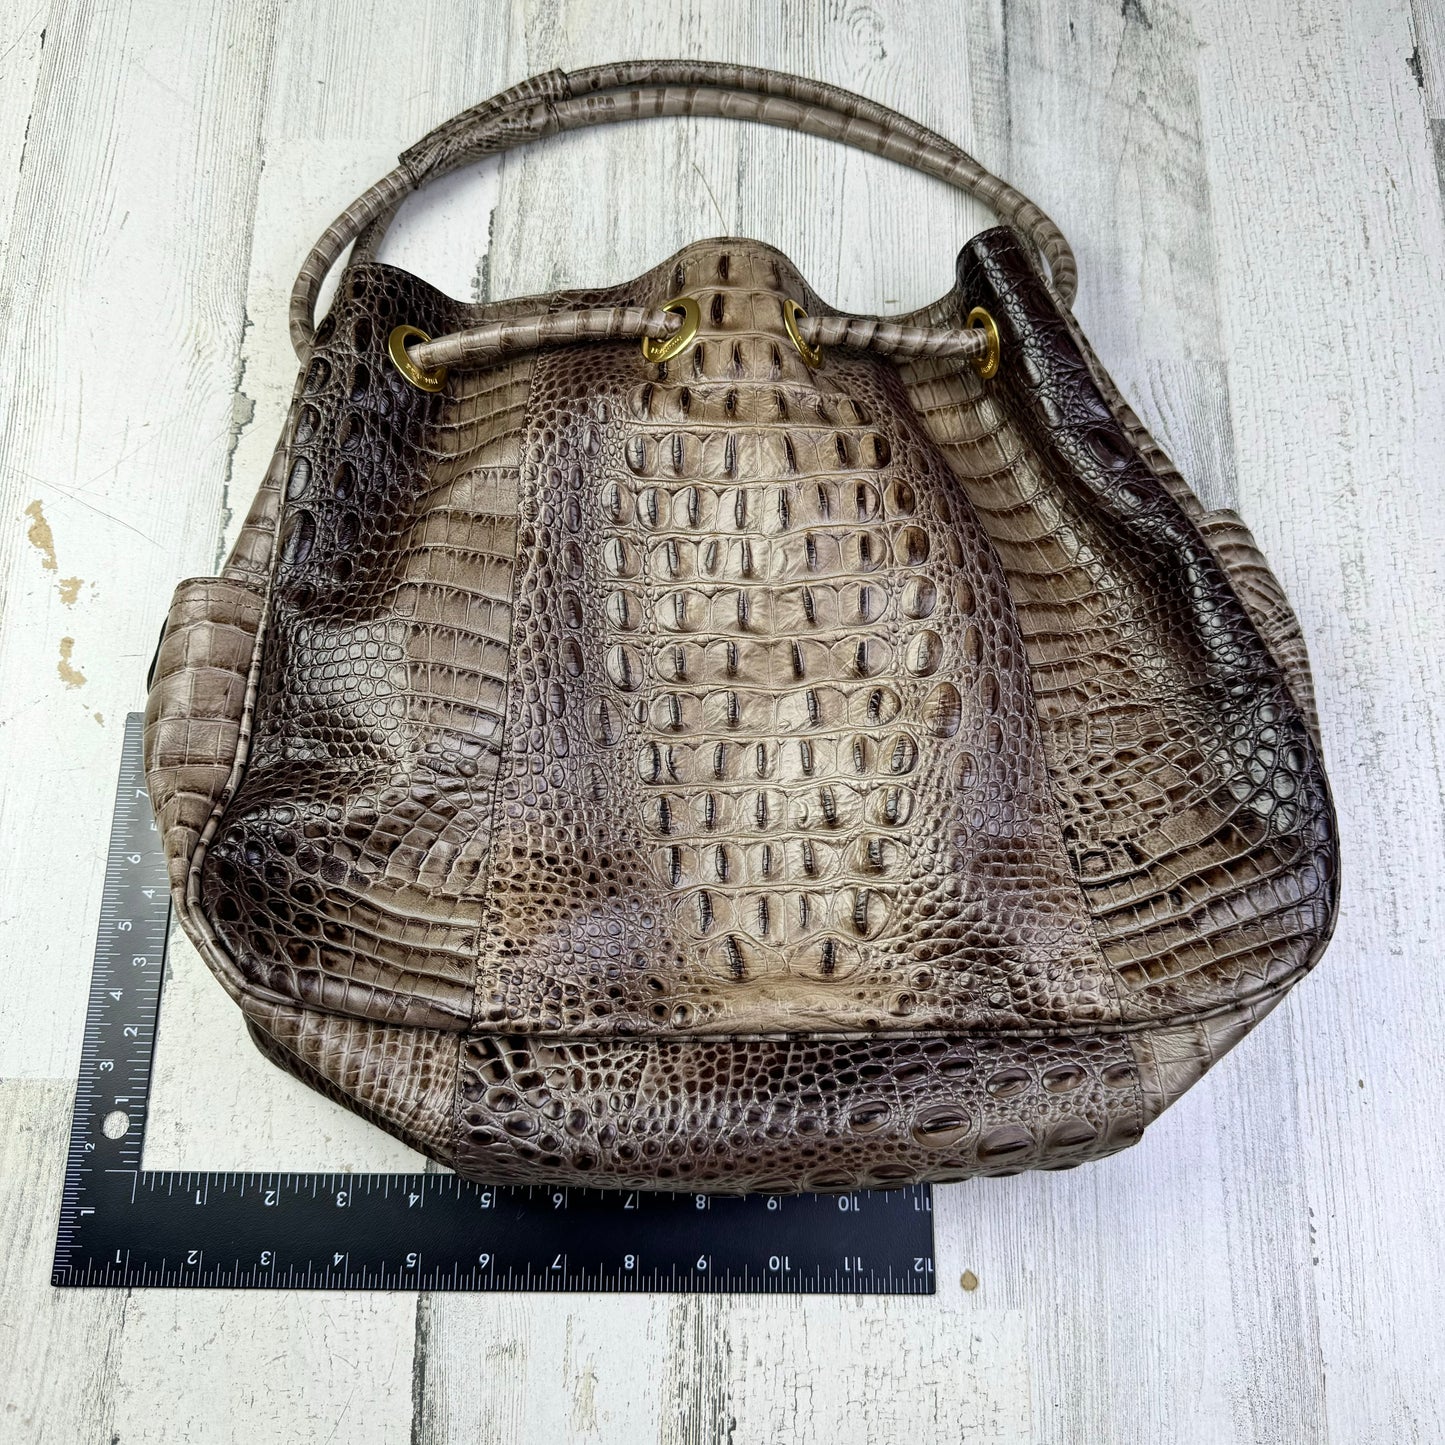 Handbag Designer Brahmin, Size Large